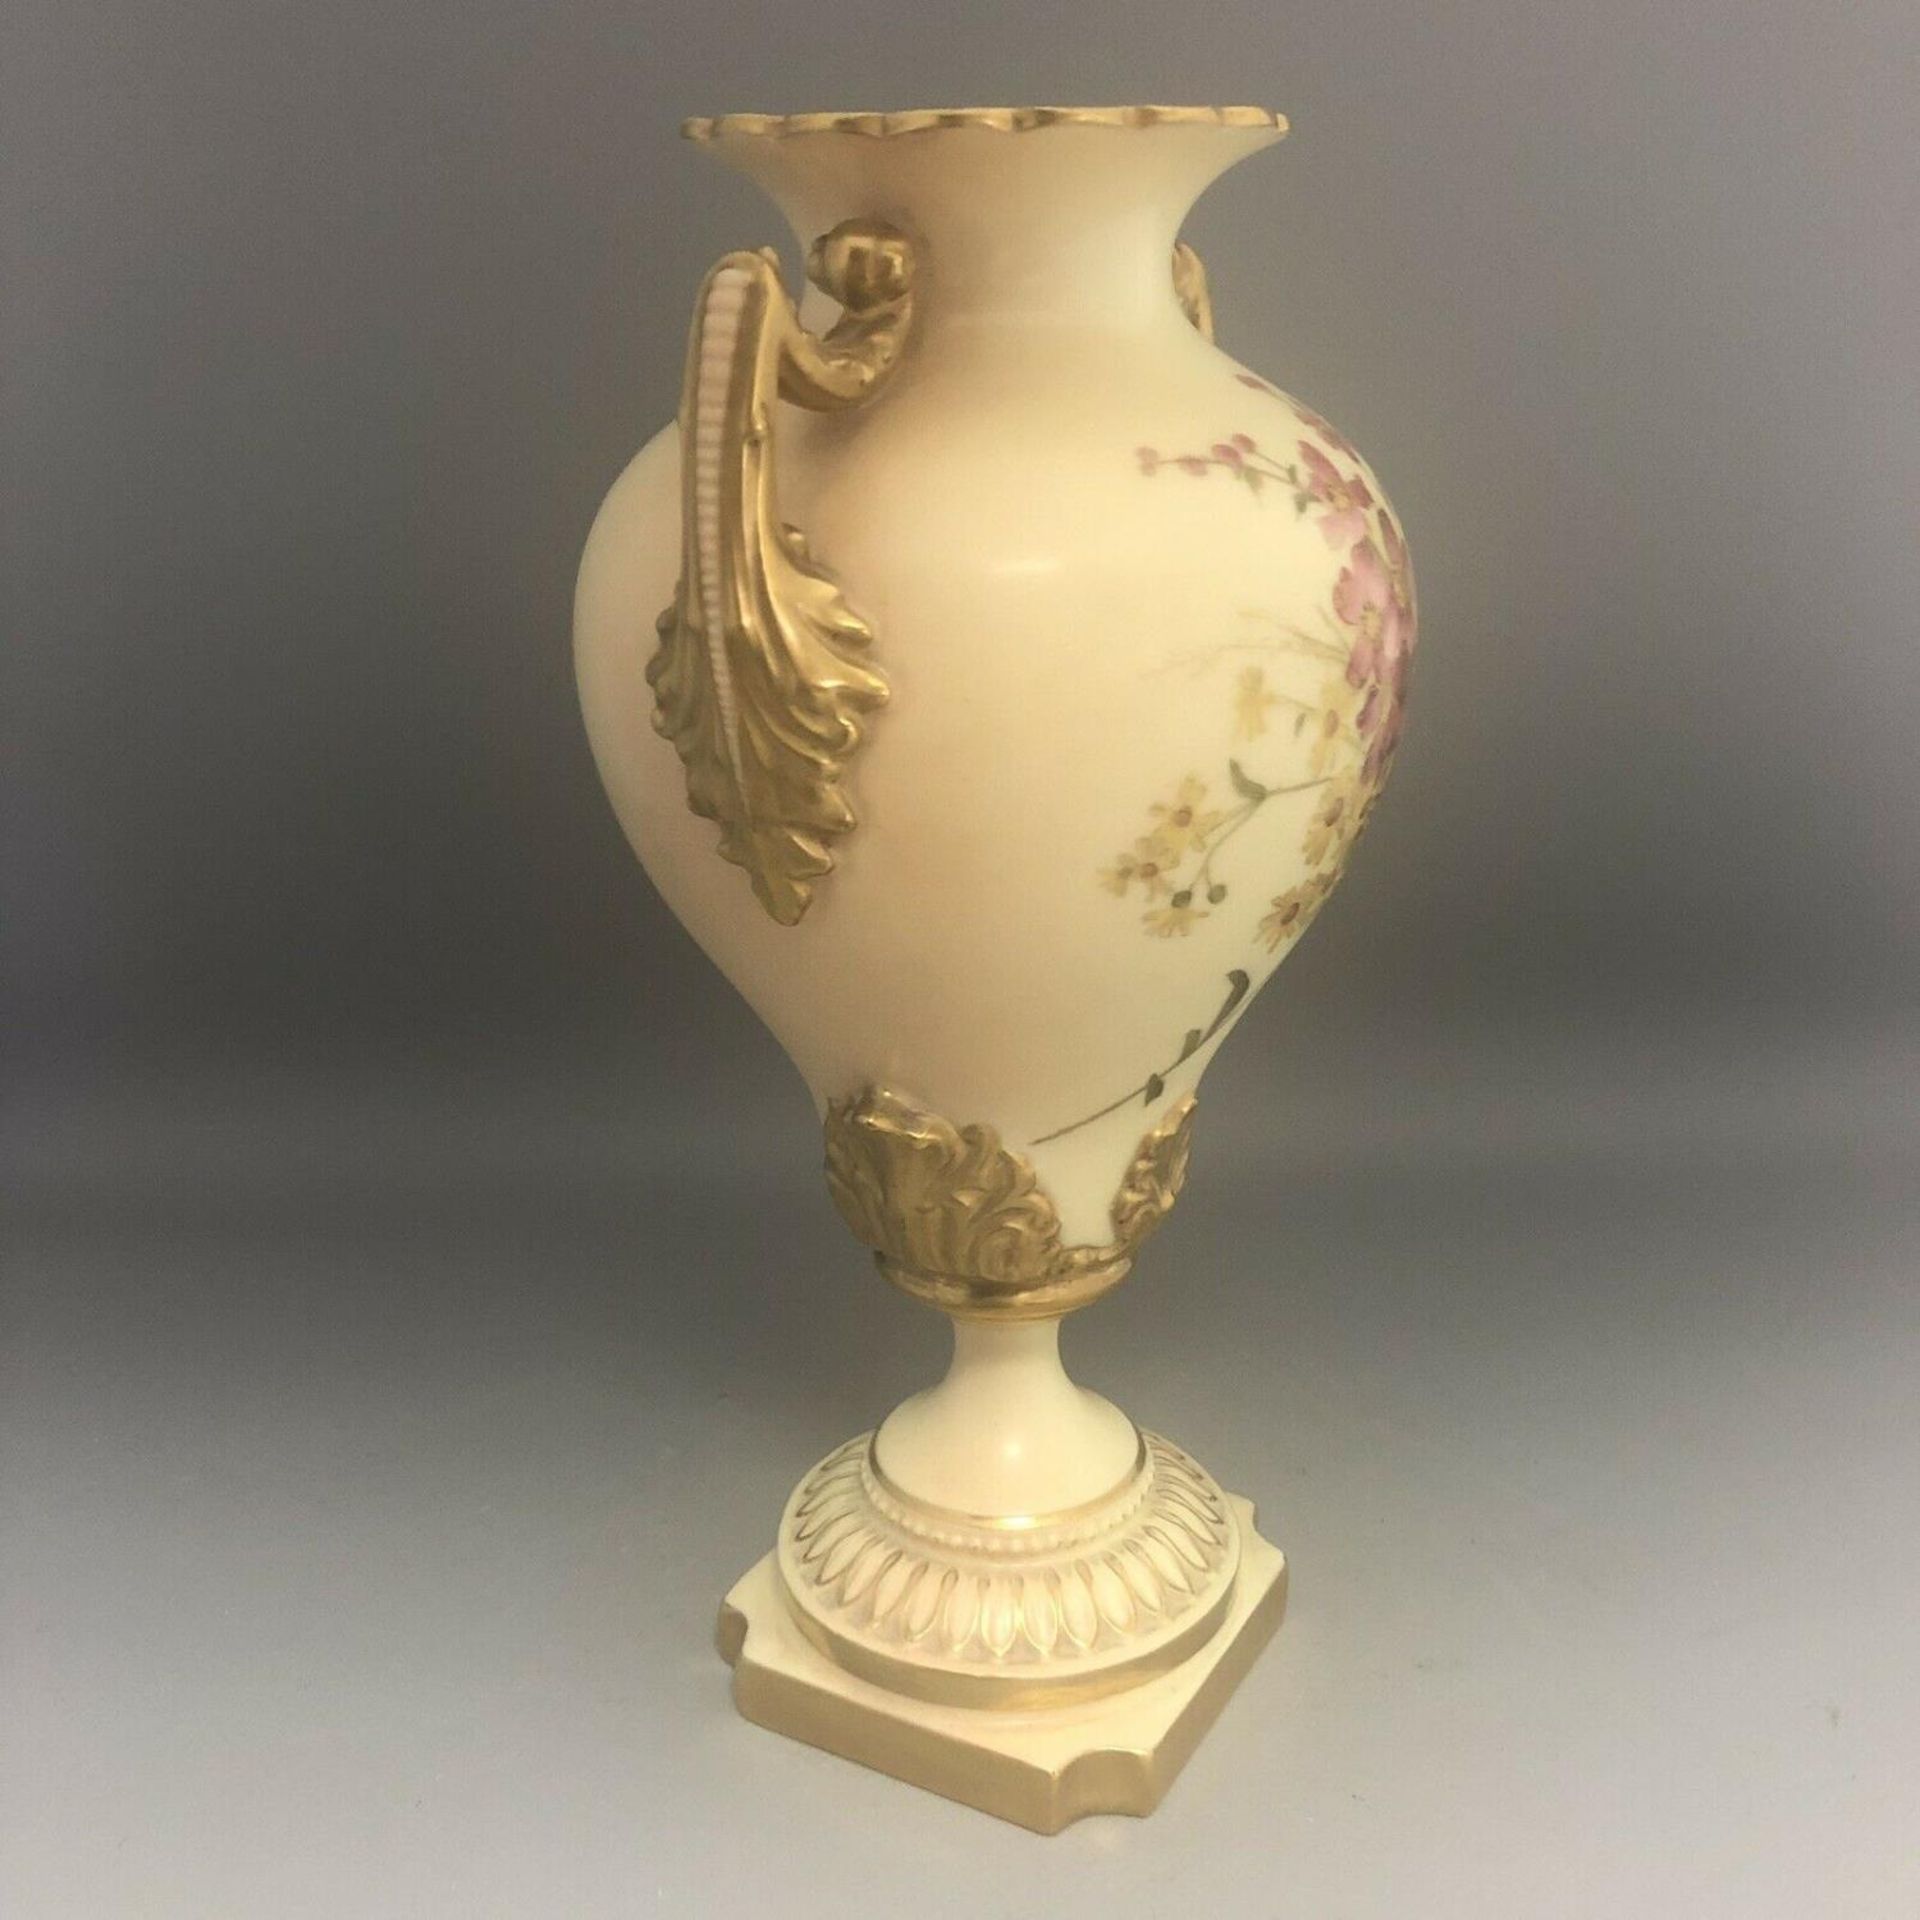 c1903, A Royal Worcester Blush Ivory Porcelain Hand Painted Flowers Pedestal Urn Vase - Image 5 of 7